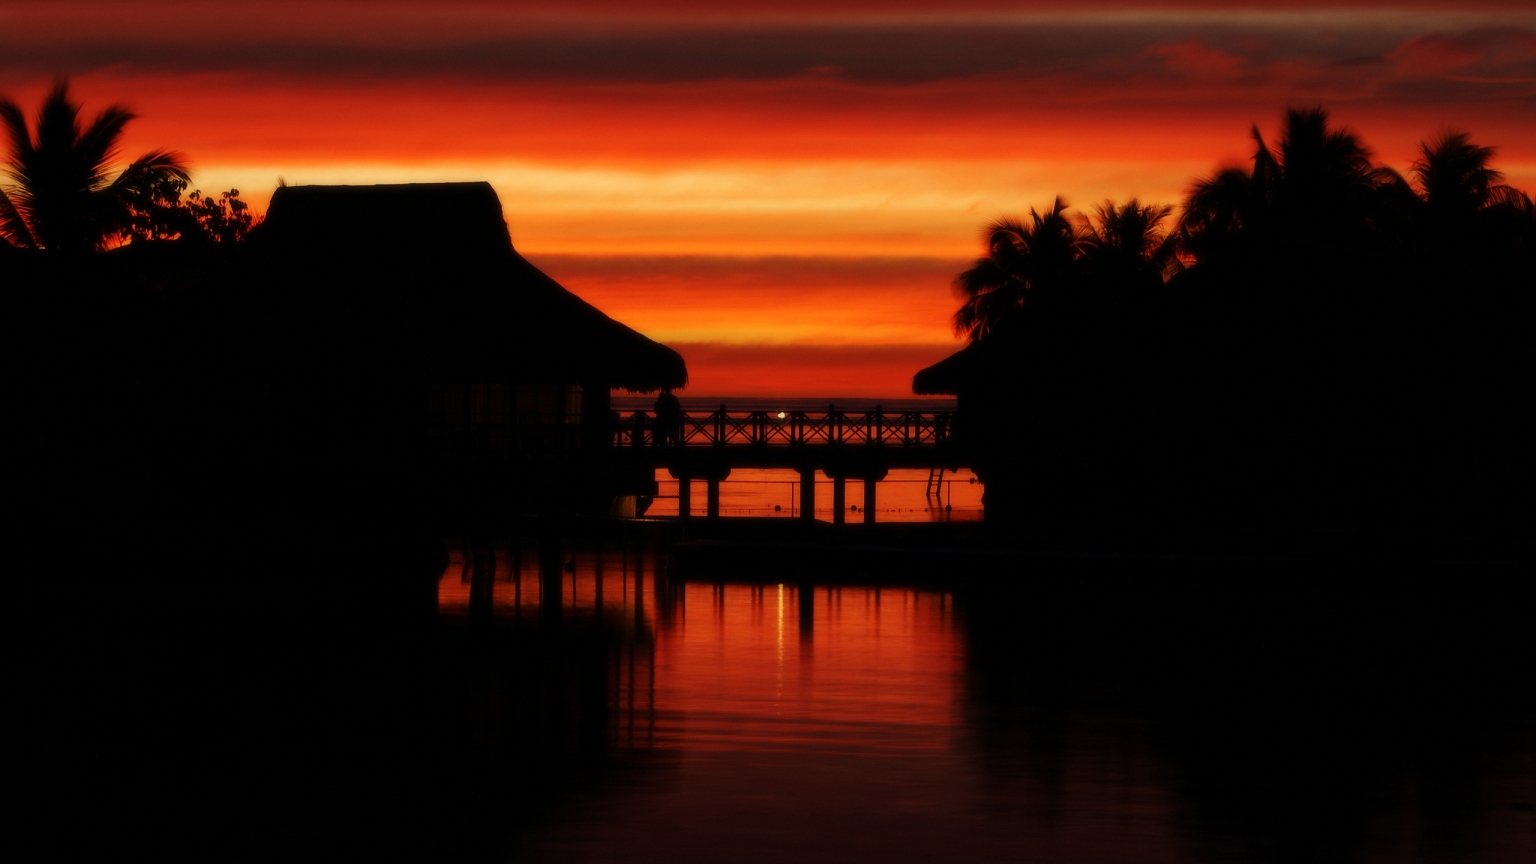 Moorea Sunset for 1536 x 864 HDTV resolution